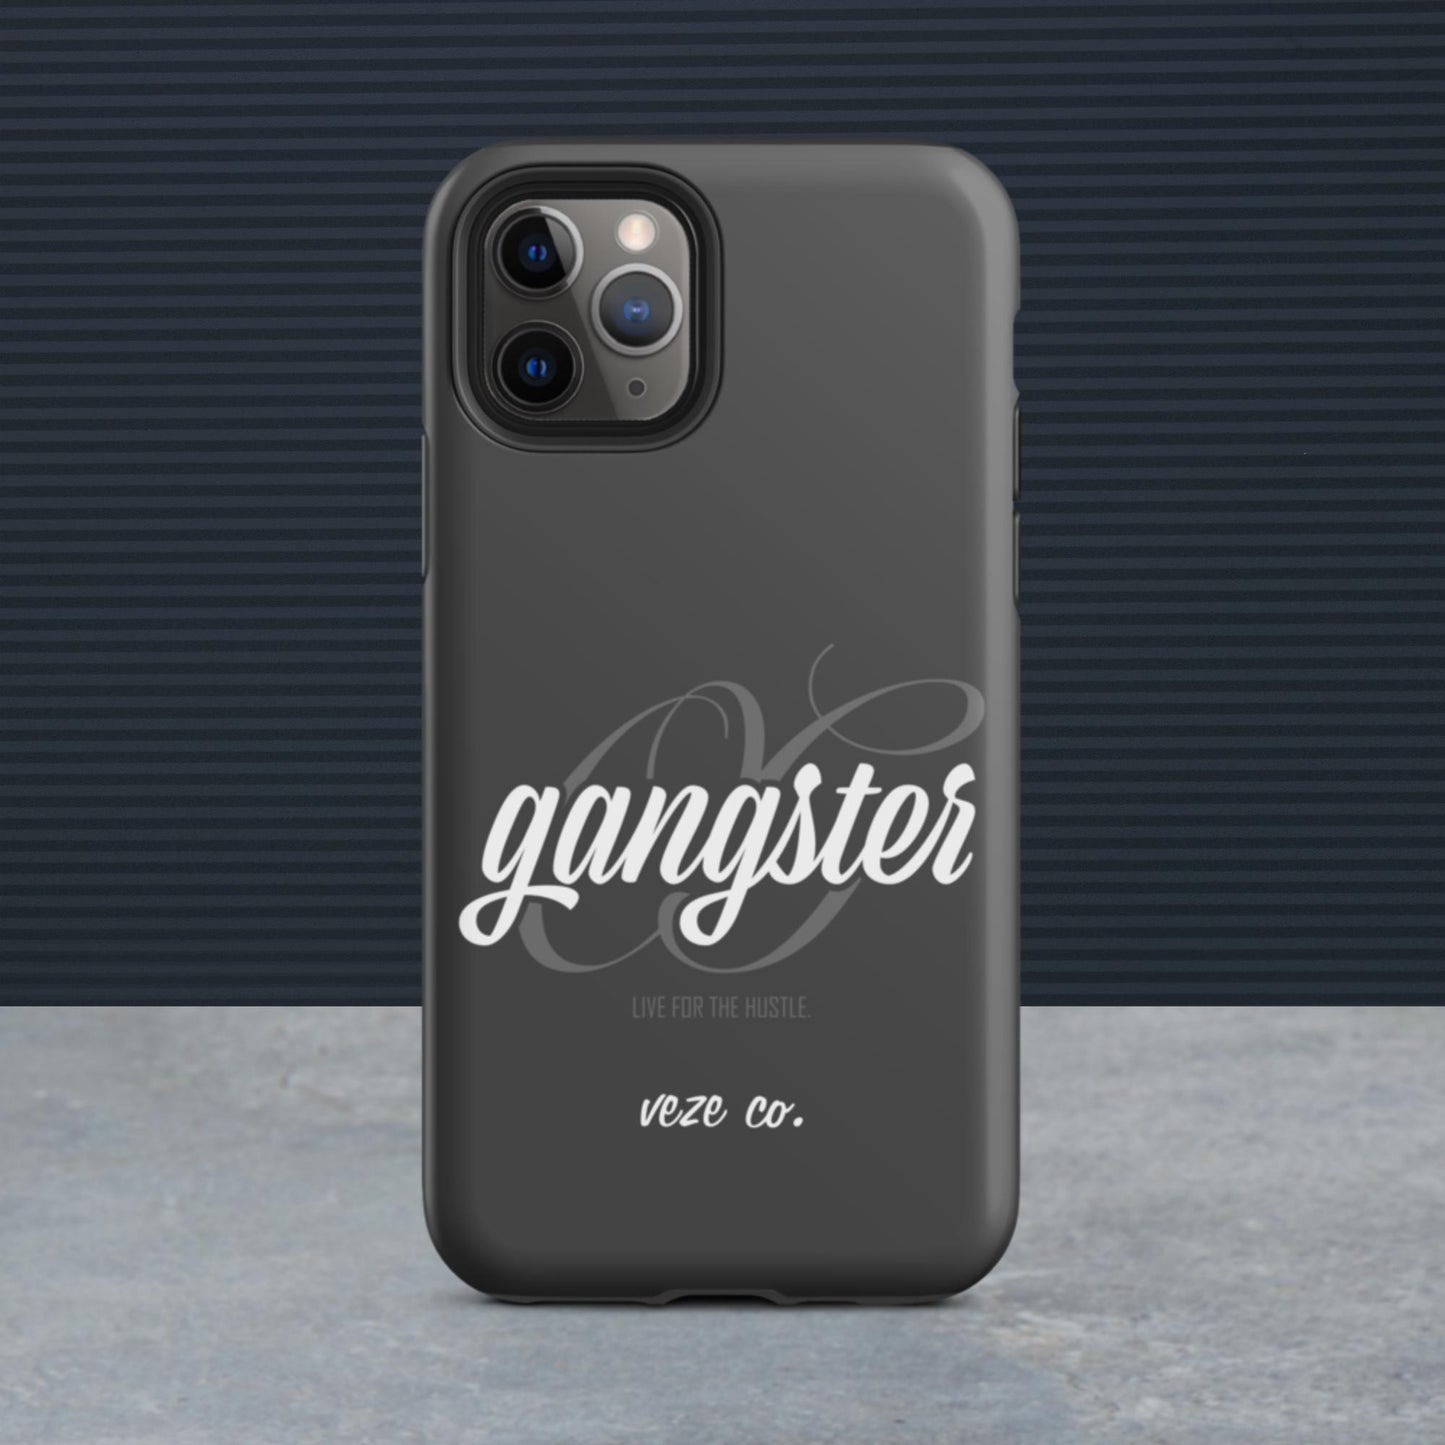 OG Gangster - iPhone Case